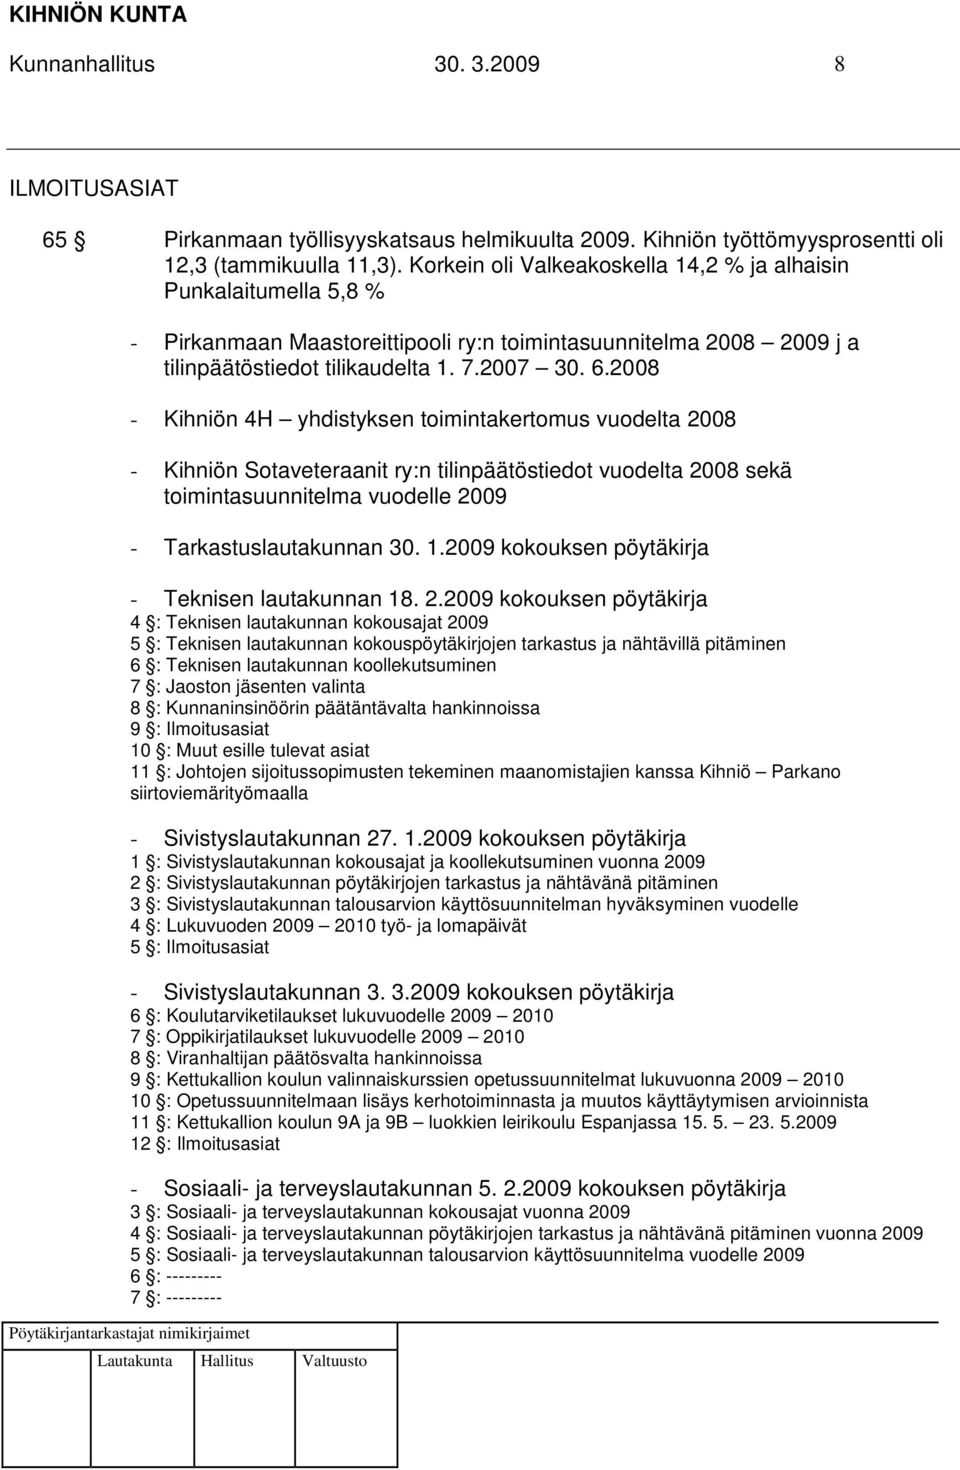 2008 - Kihniön 4H yhdistyksen toimintakertomus vuodelta 2008 - Kihniön Sotaveteraanit ry:n tilinpäätöstiedot vuodelta 2008 sekä toimintasuunnitelma vuodelle 2009 - Tarkastuslautakunnan 30. 1.